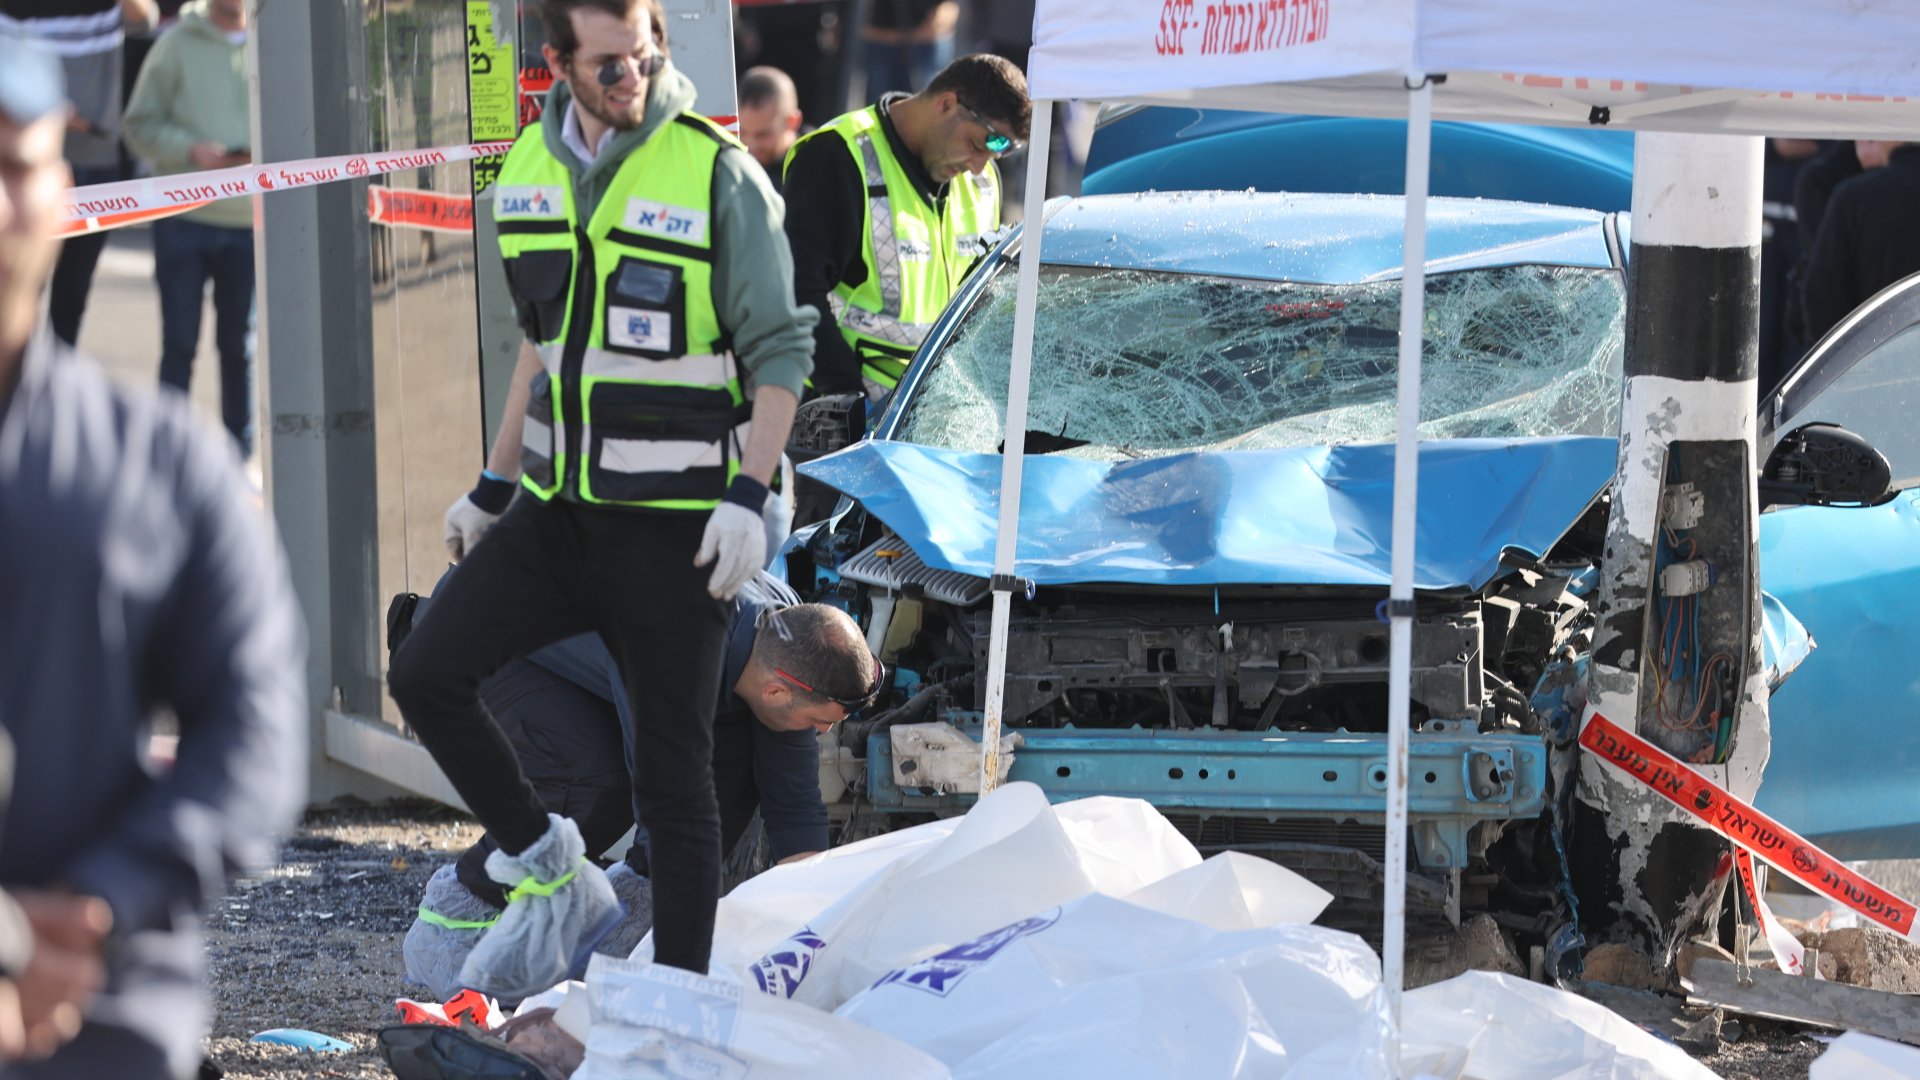 Rettungskräfte an einer Bushaltestelle in Jerusalem, wo ein Auto in eine Menschenansammlung fuhr. | dpa